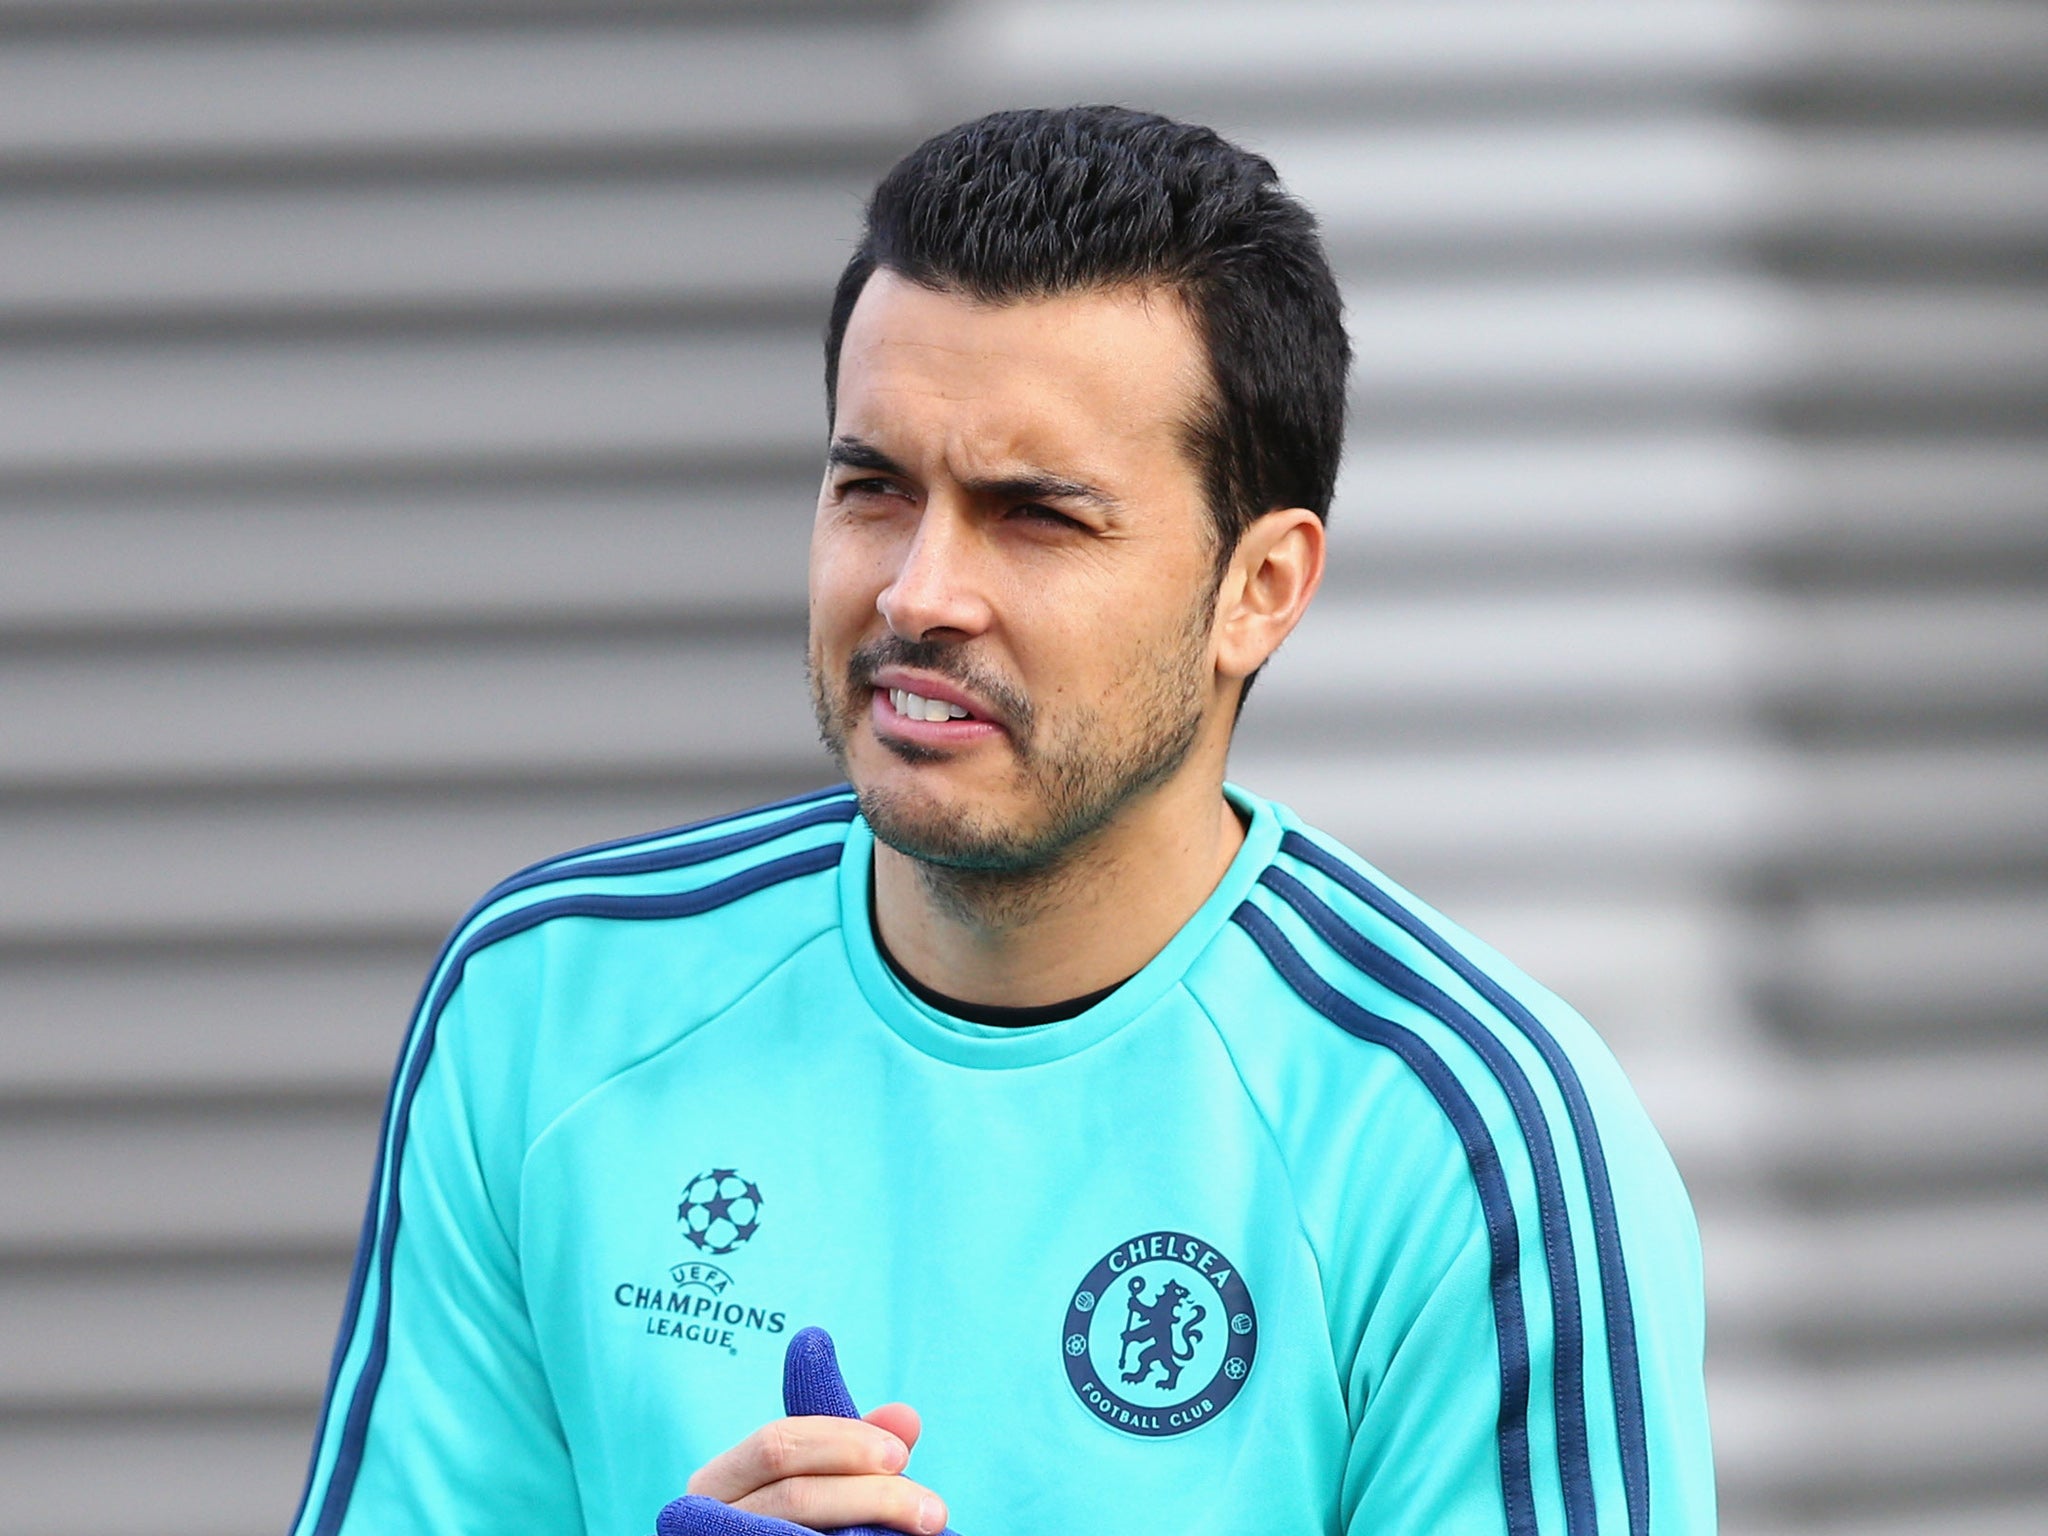 Chelsea winger Pedro